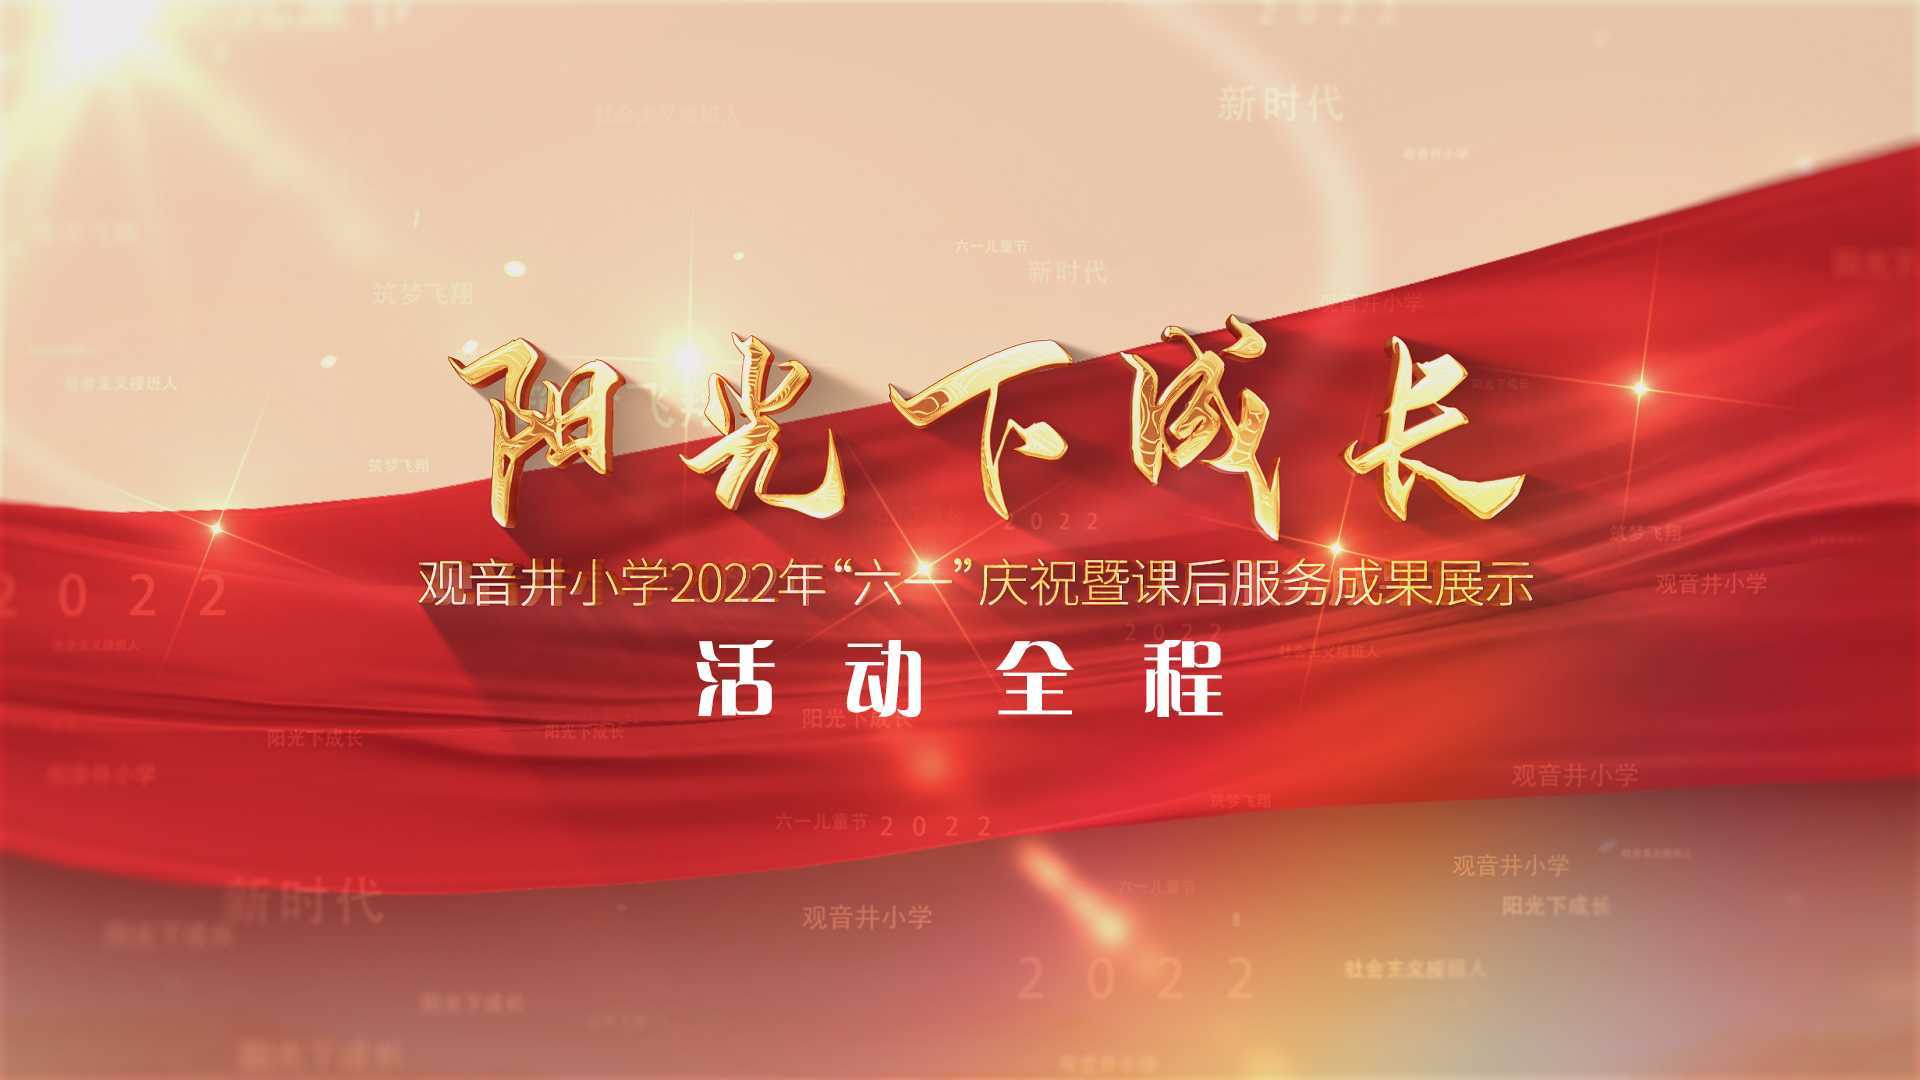 观音井小学2022年“六一庆祝暨课后服务成果展示活动全程